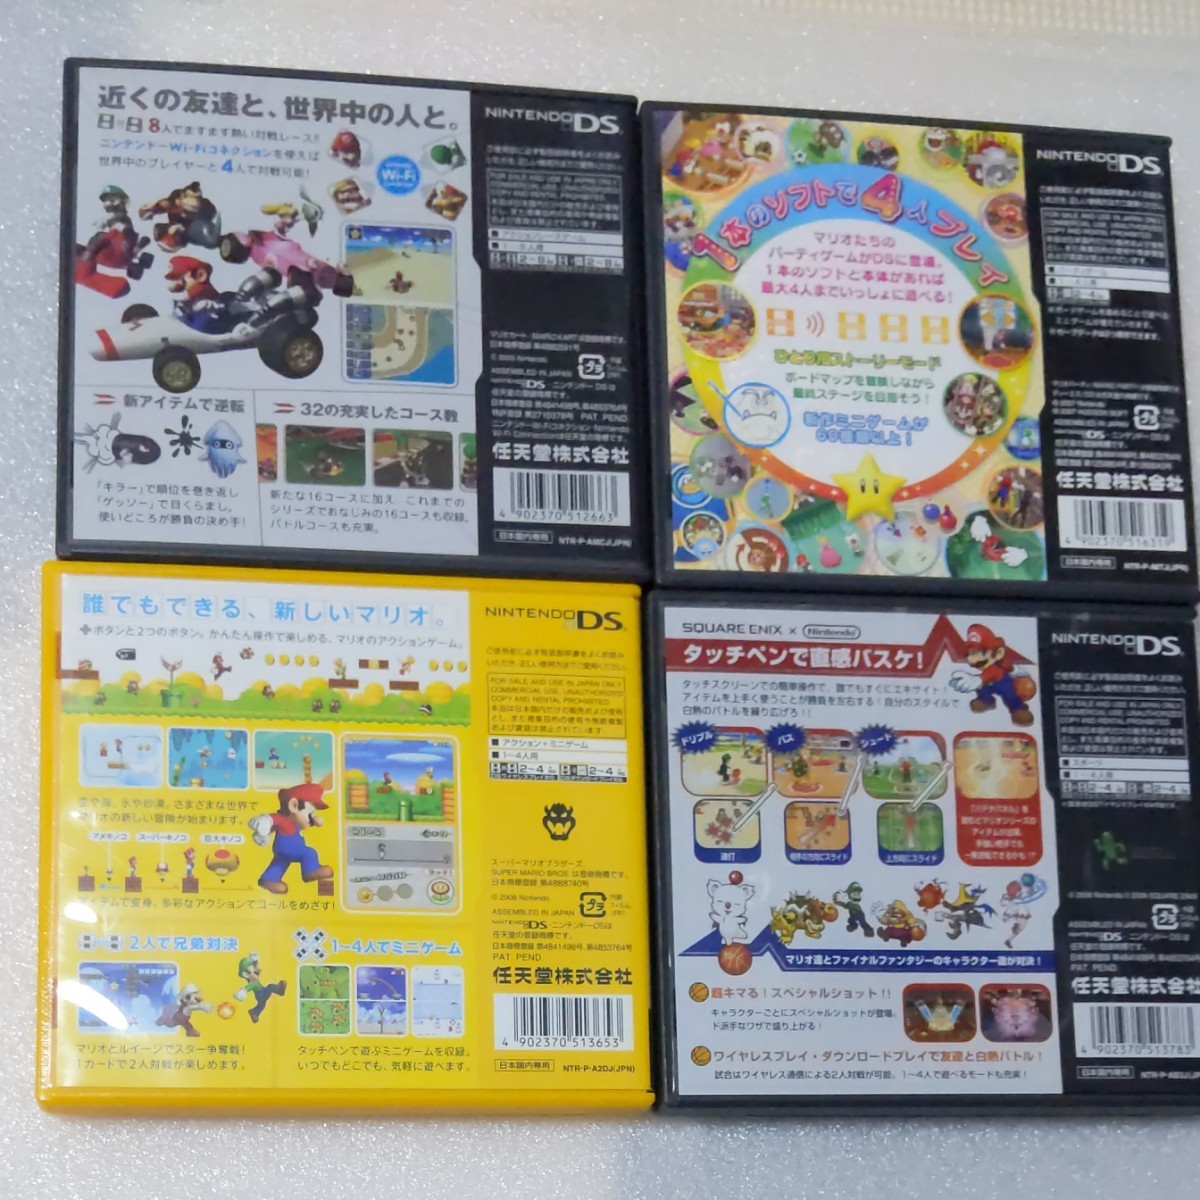 DSソフト マリオシリーズのゲーム4本セット販売